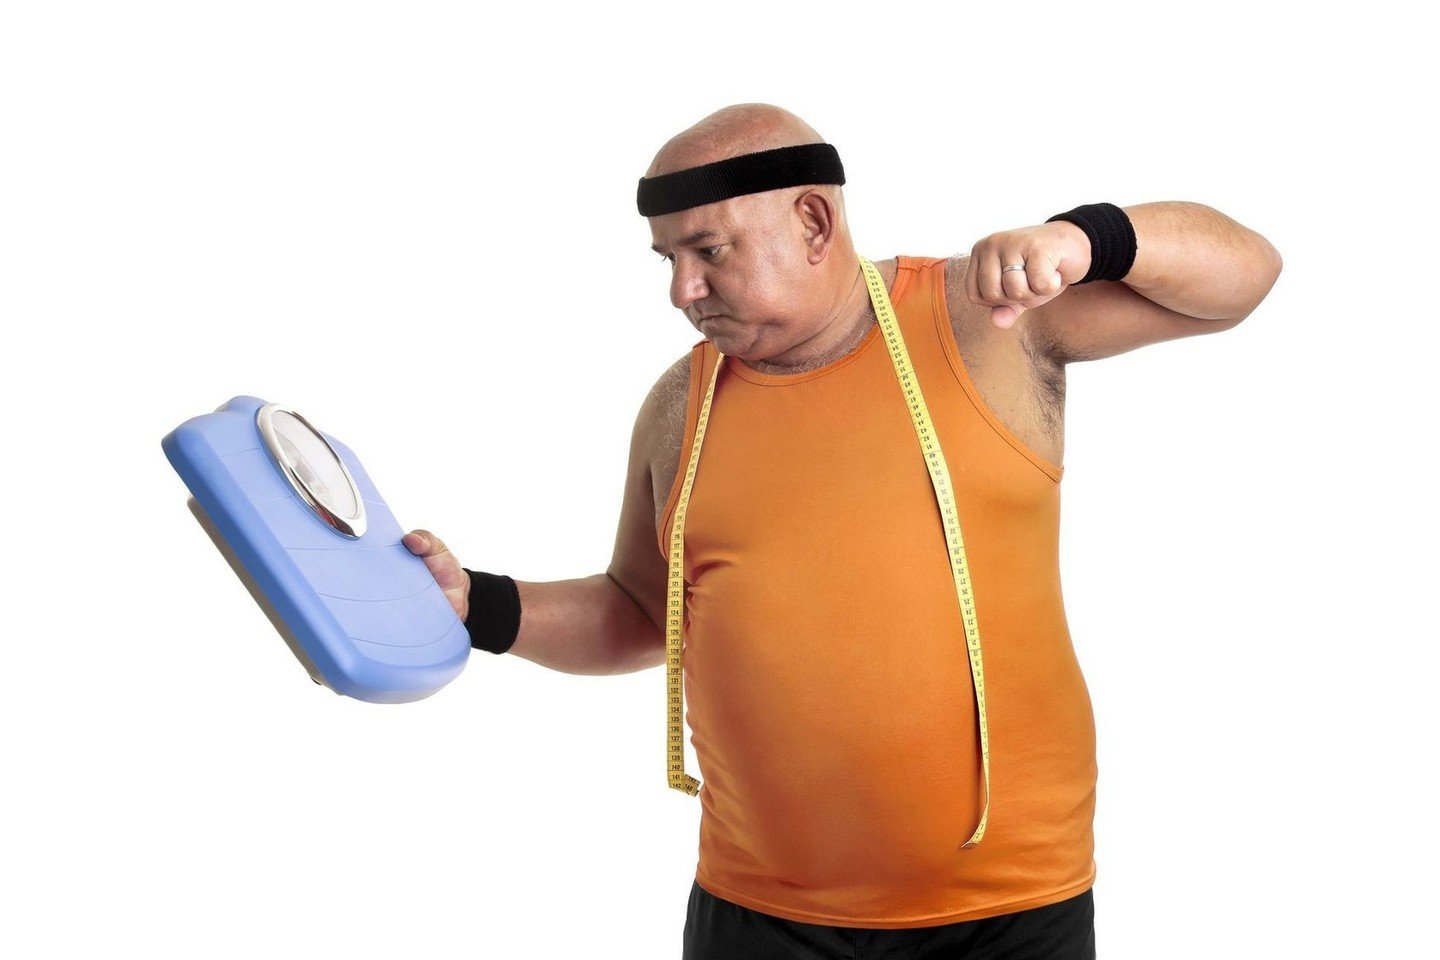 ar numetate svorio nutraukdamas mirtazapino vartojimą vanessa svorio metimas